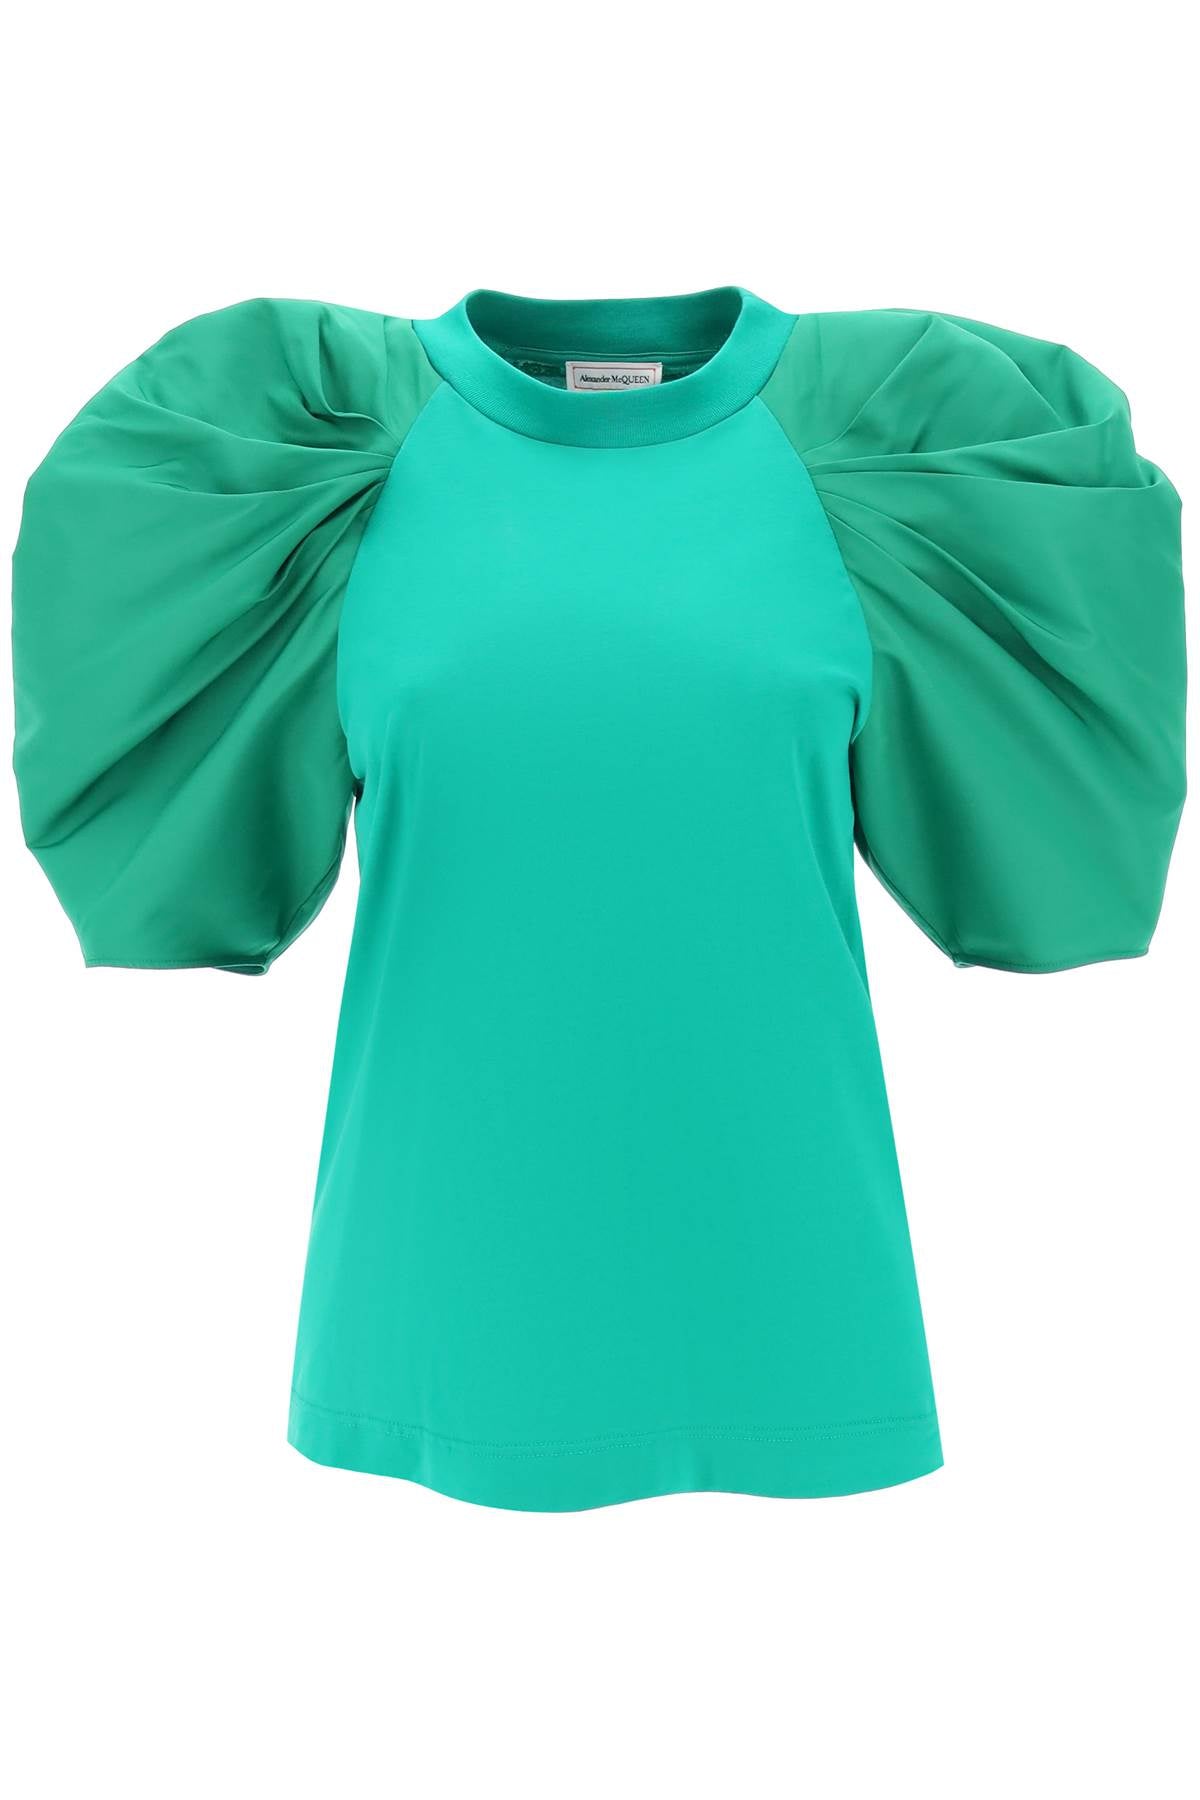 ALEXANDER MCQUEEN Green Ruched Balloon Sleeve T-Shirt for Women